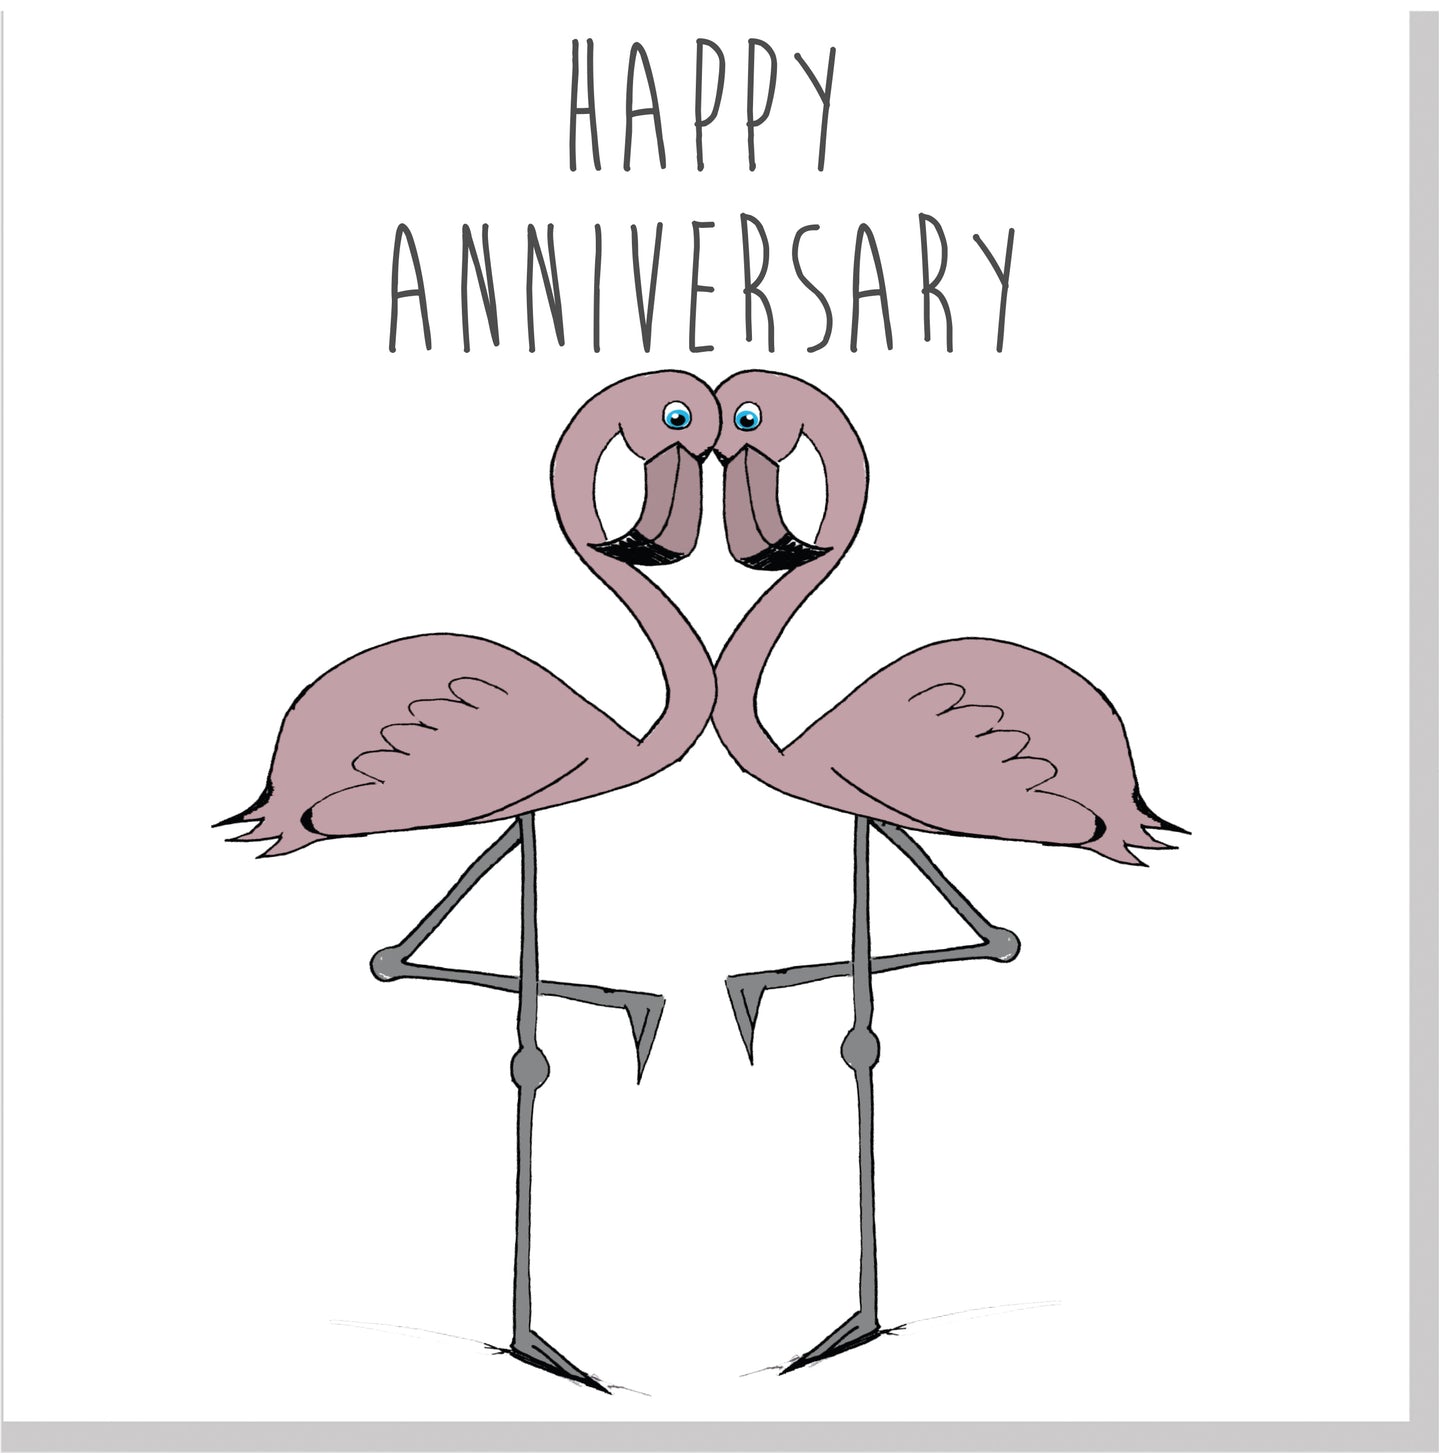 Happy Anniversary blush flamingo square card